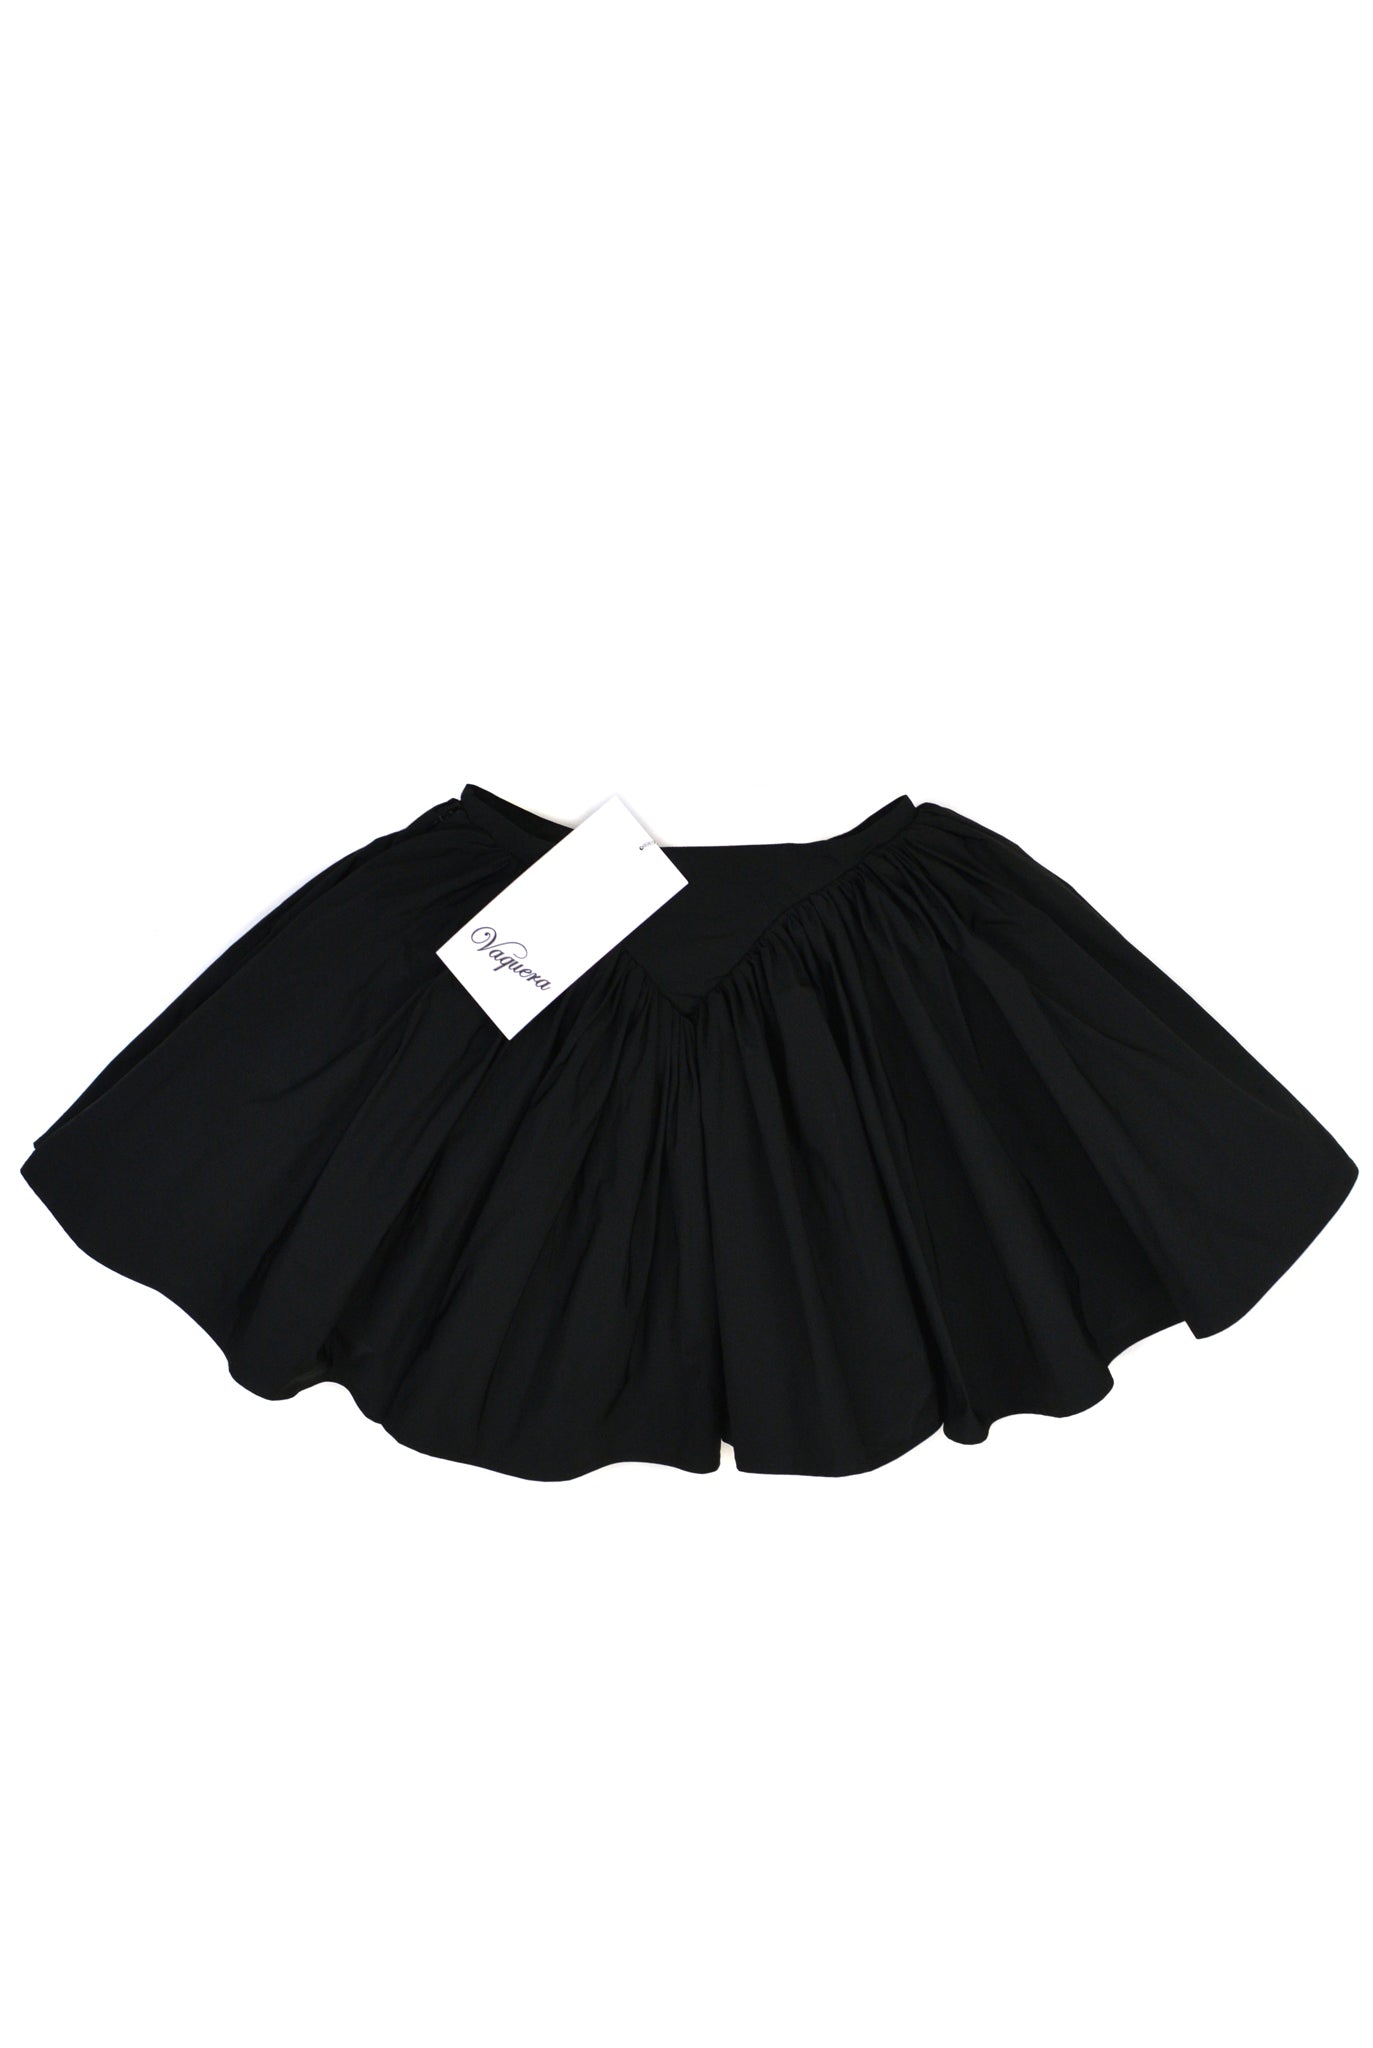 Vaquera Underwear Skirt, Black